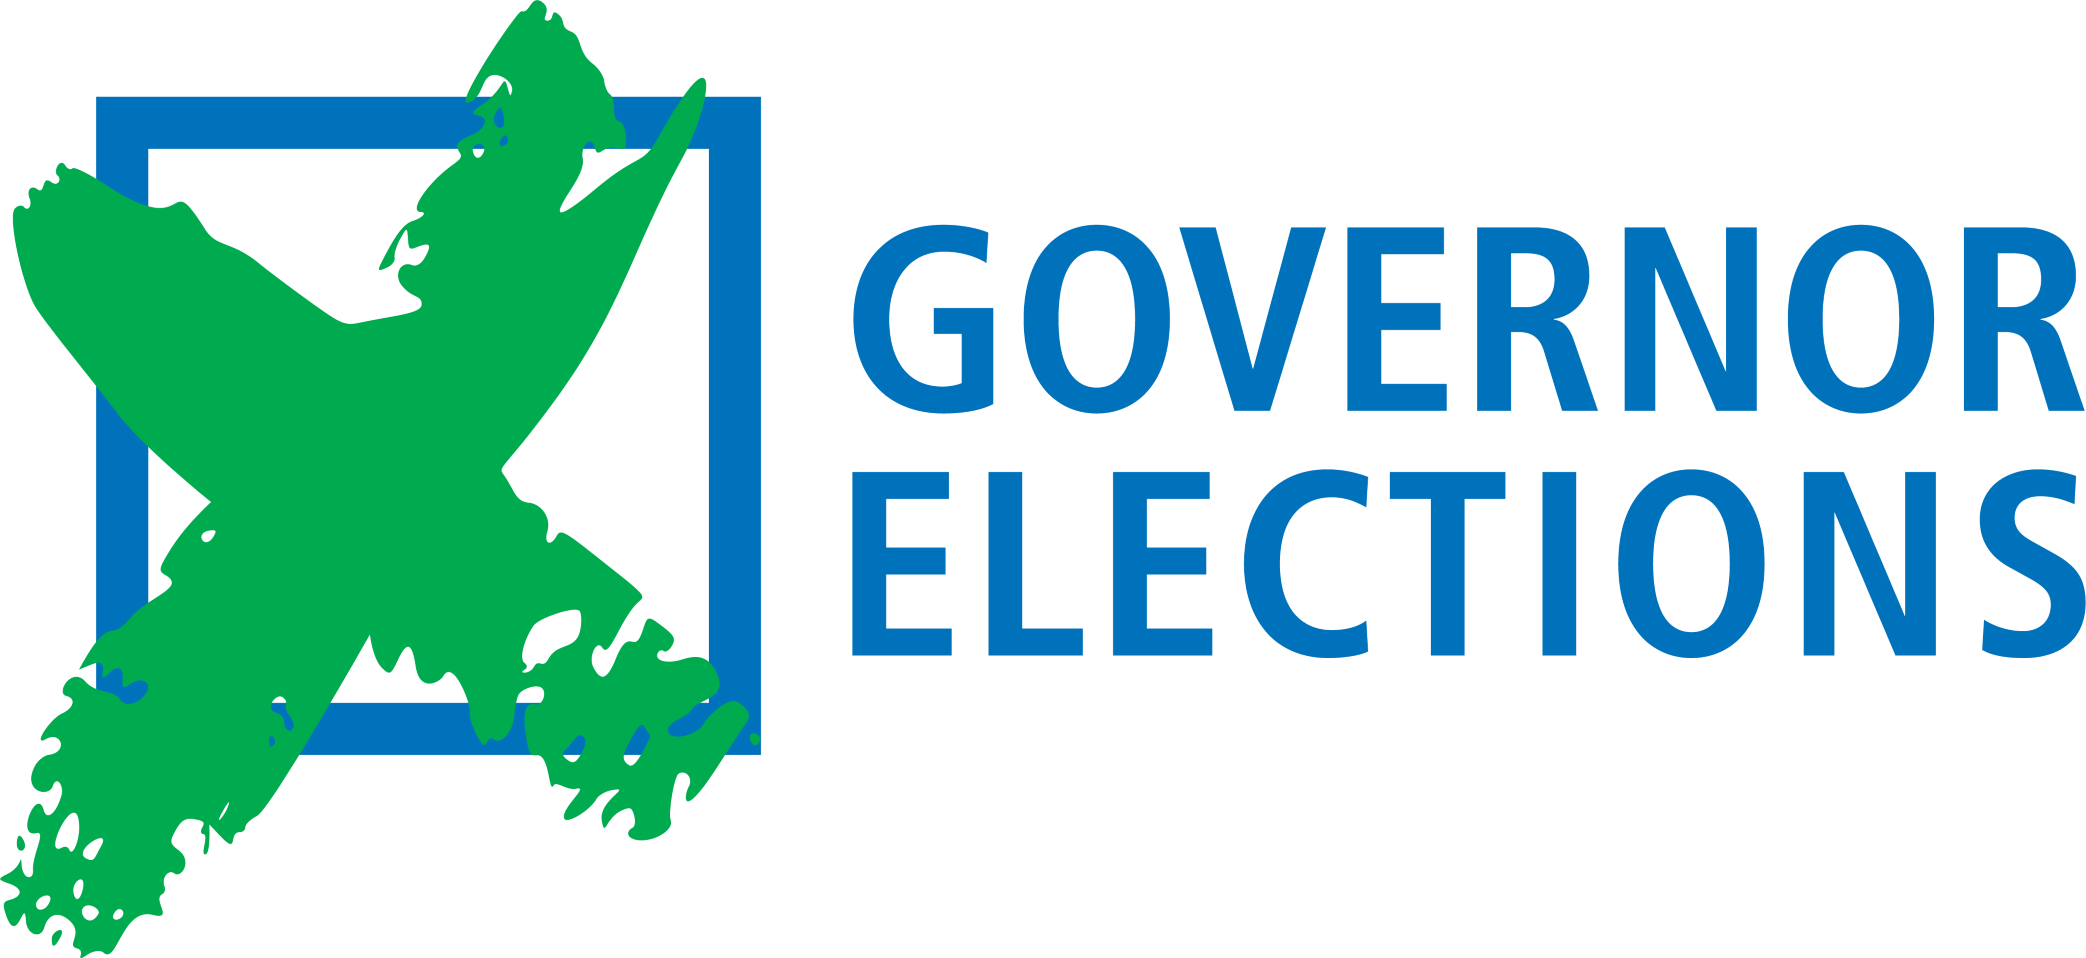 Governor election logo